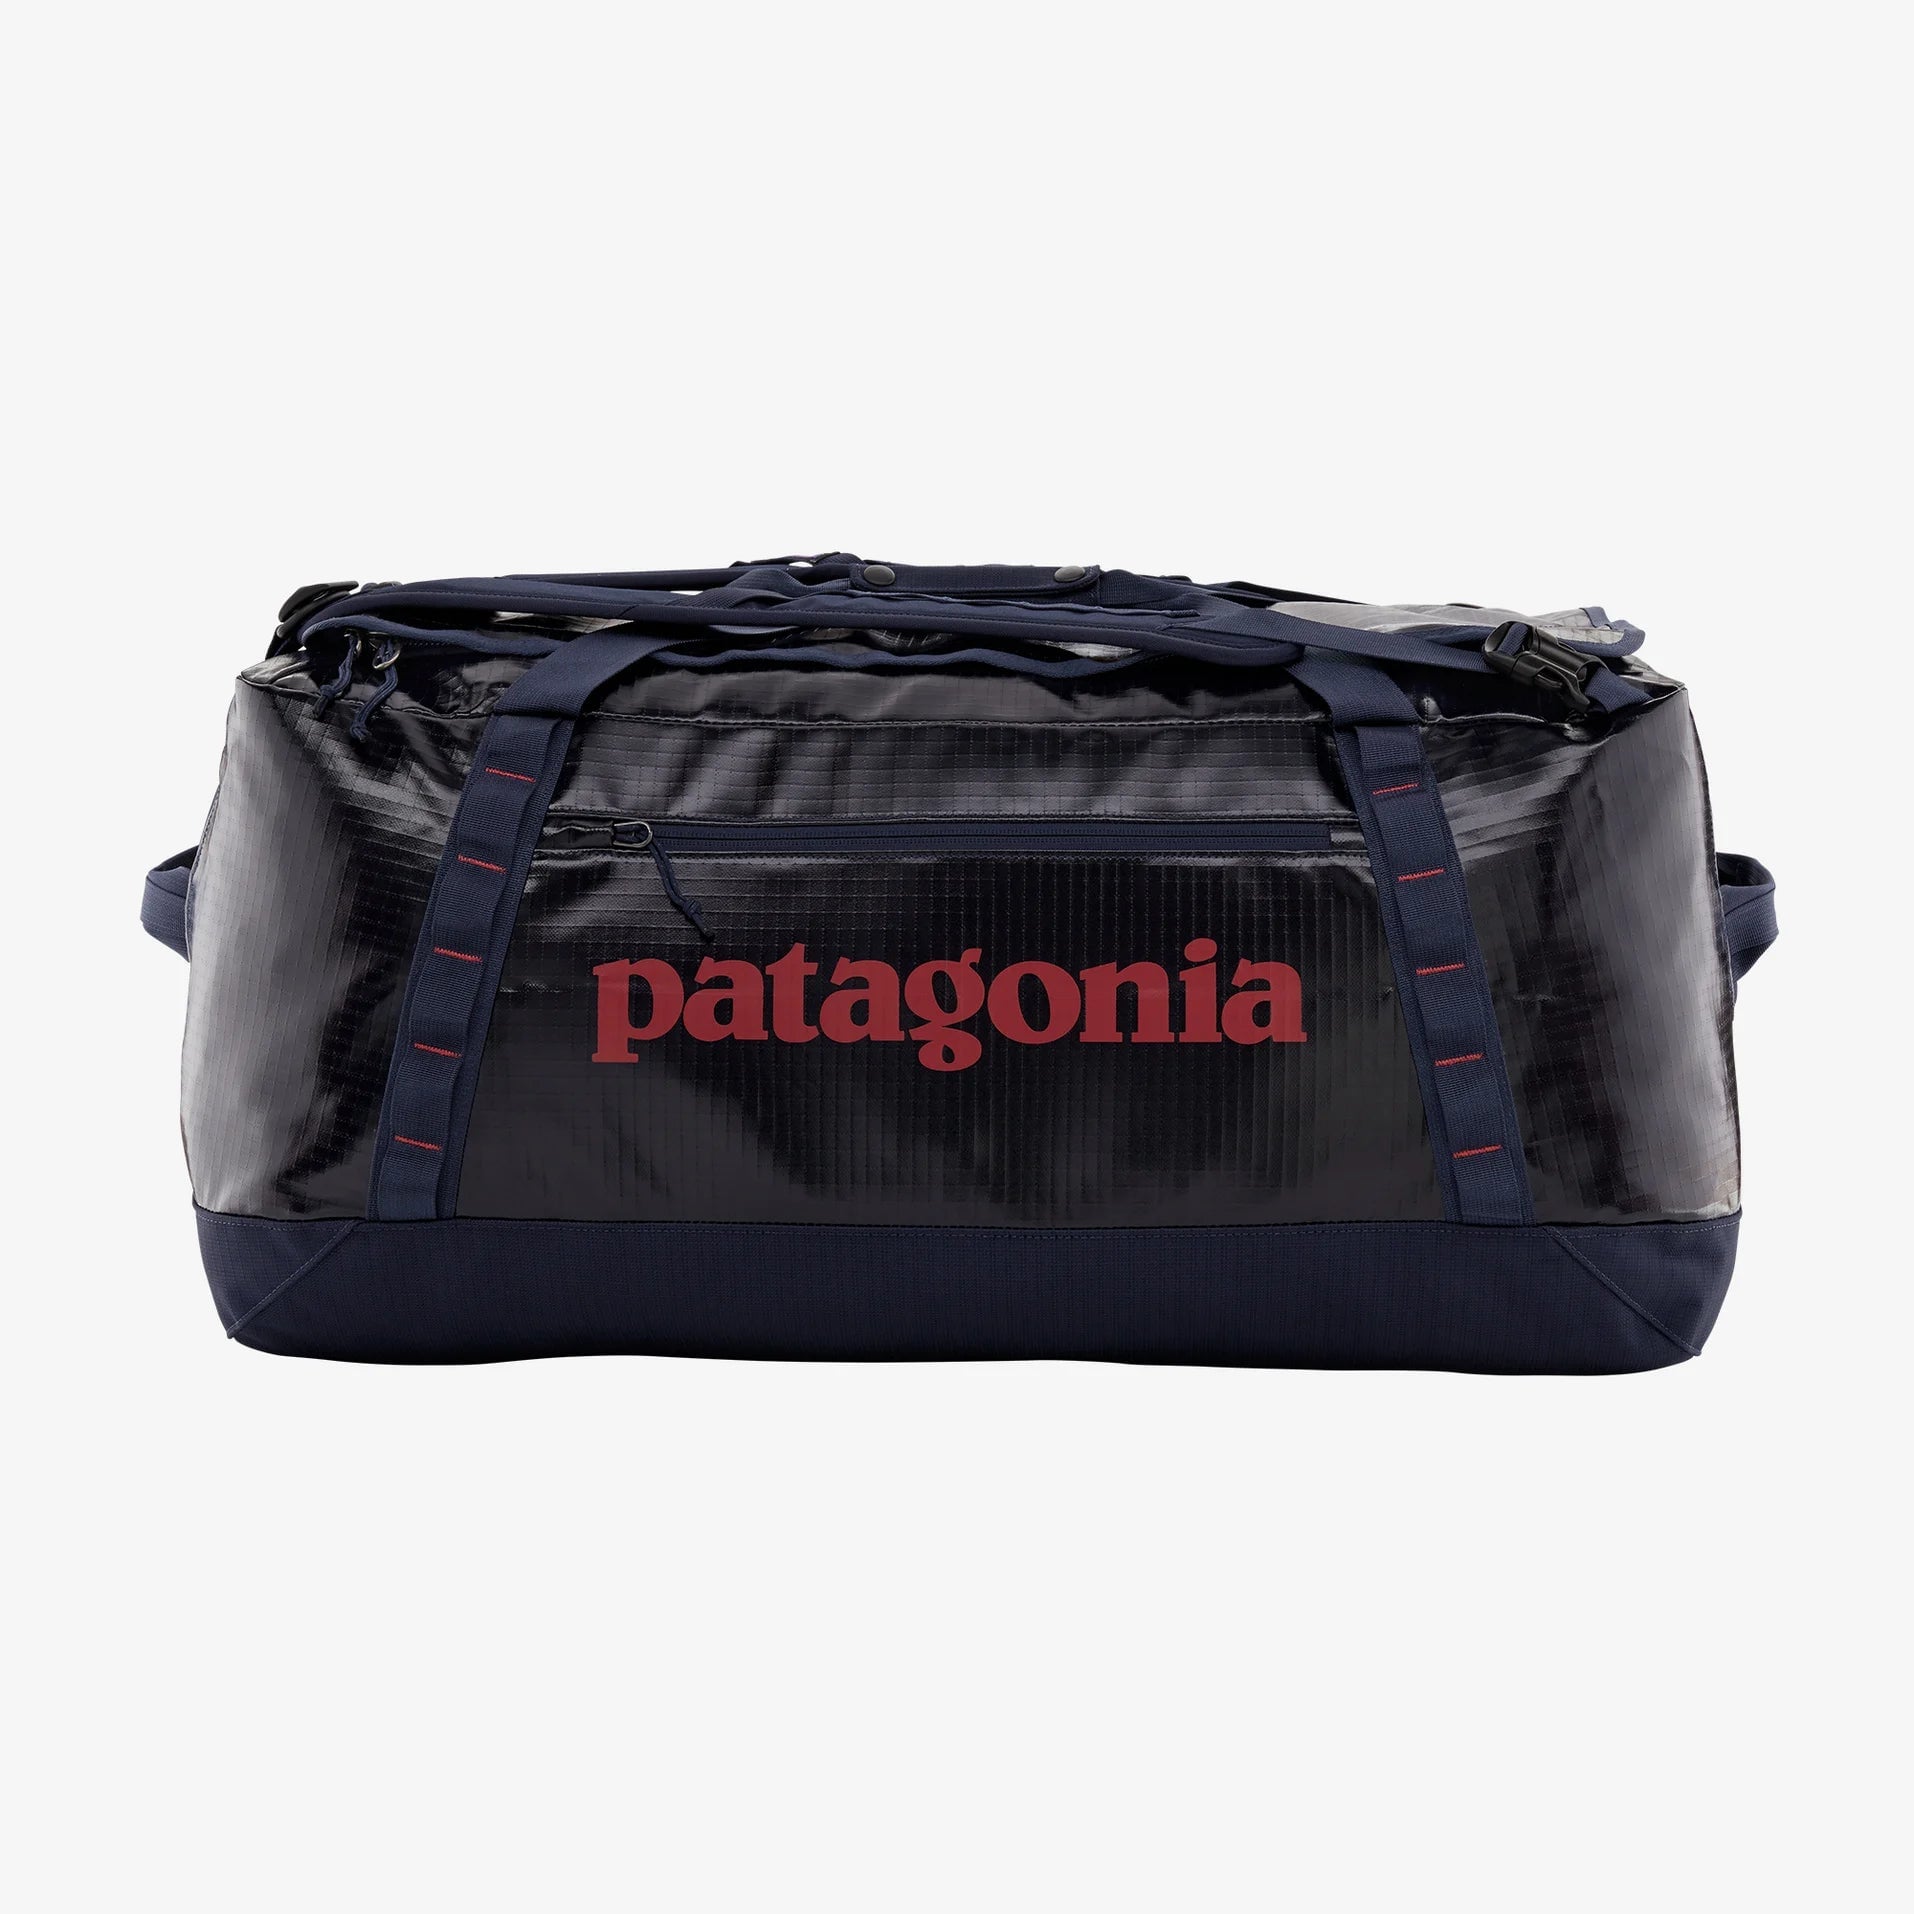 Patagonia Black Hole Duffel Bag 70L - Classic Navy Duffel Bag Patagonia 